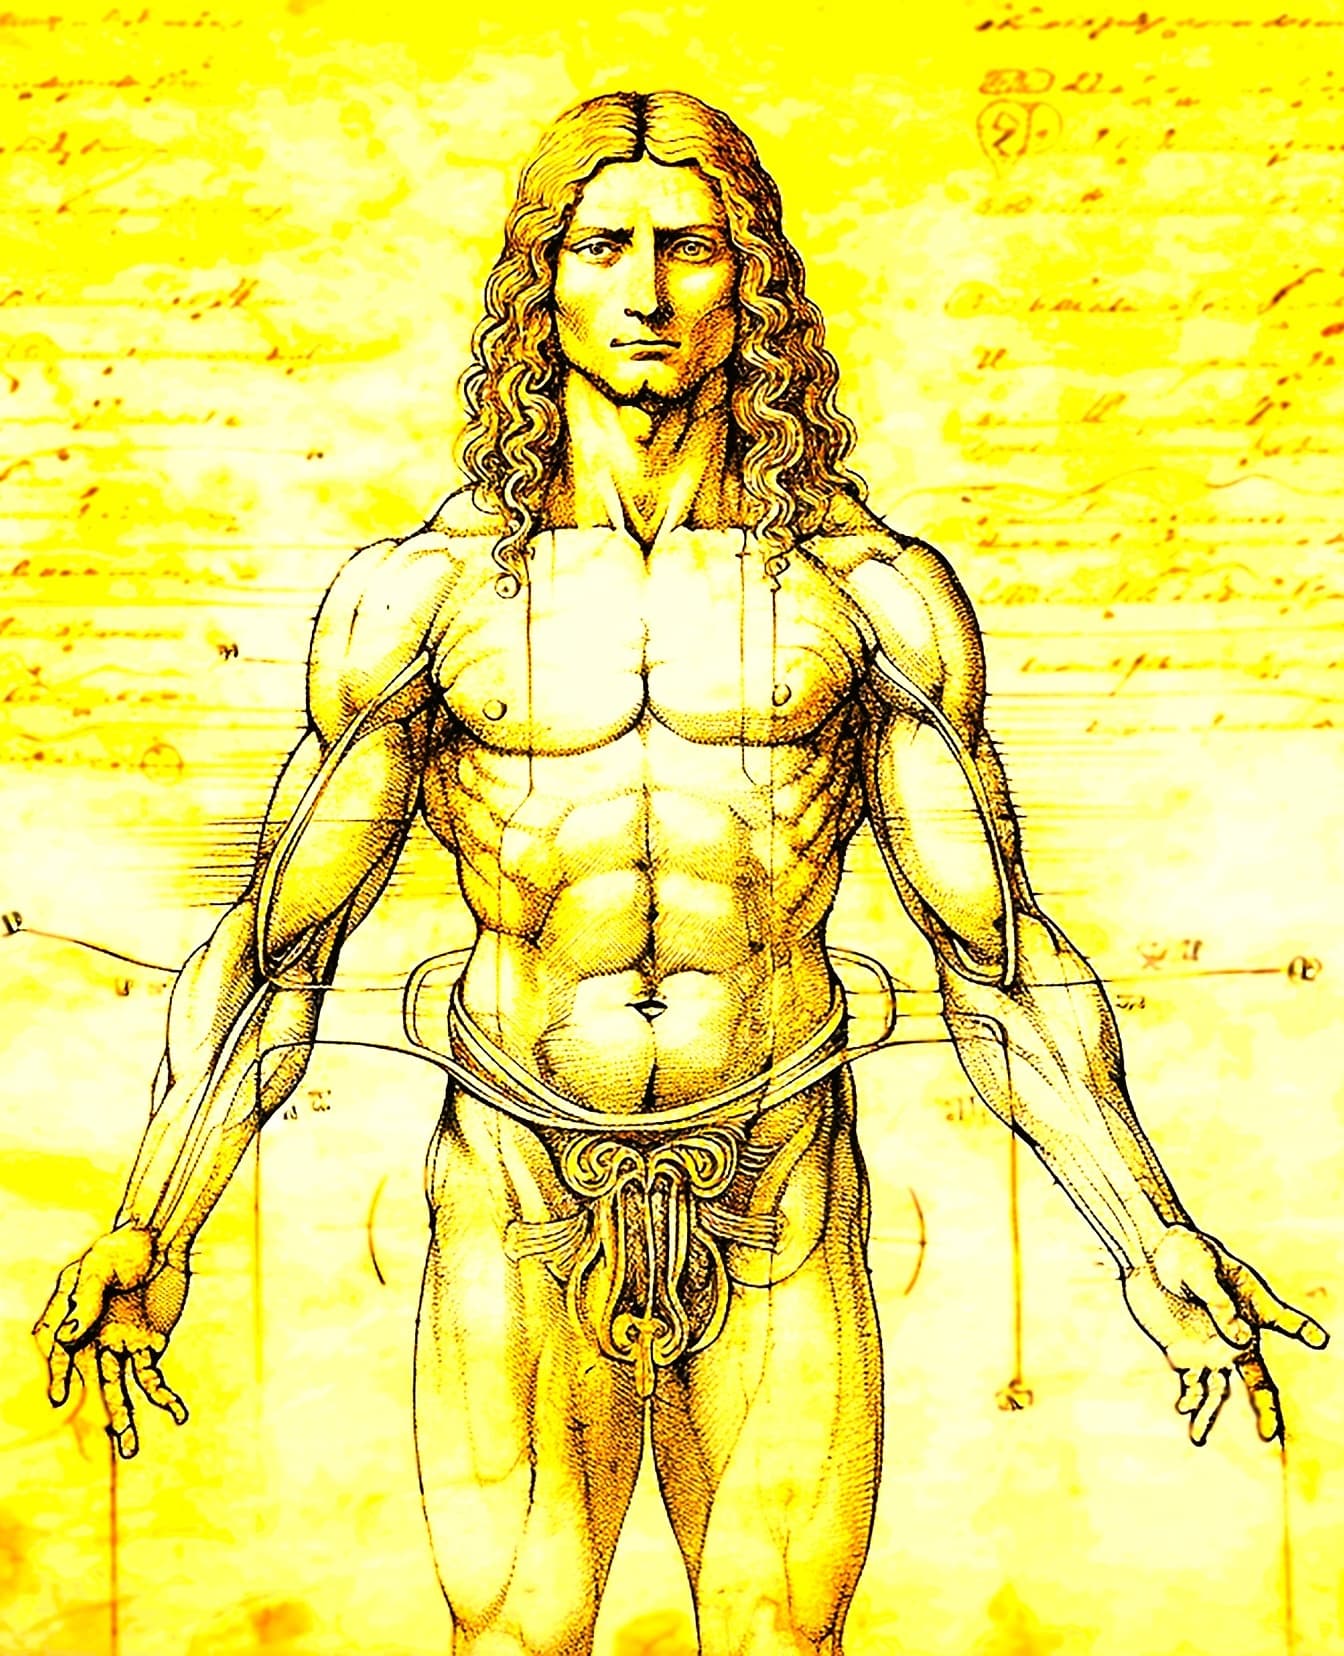 레오나르도 다빈치의 비트루비우스 인간 스타일의 근육질의 해부학 그림